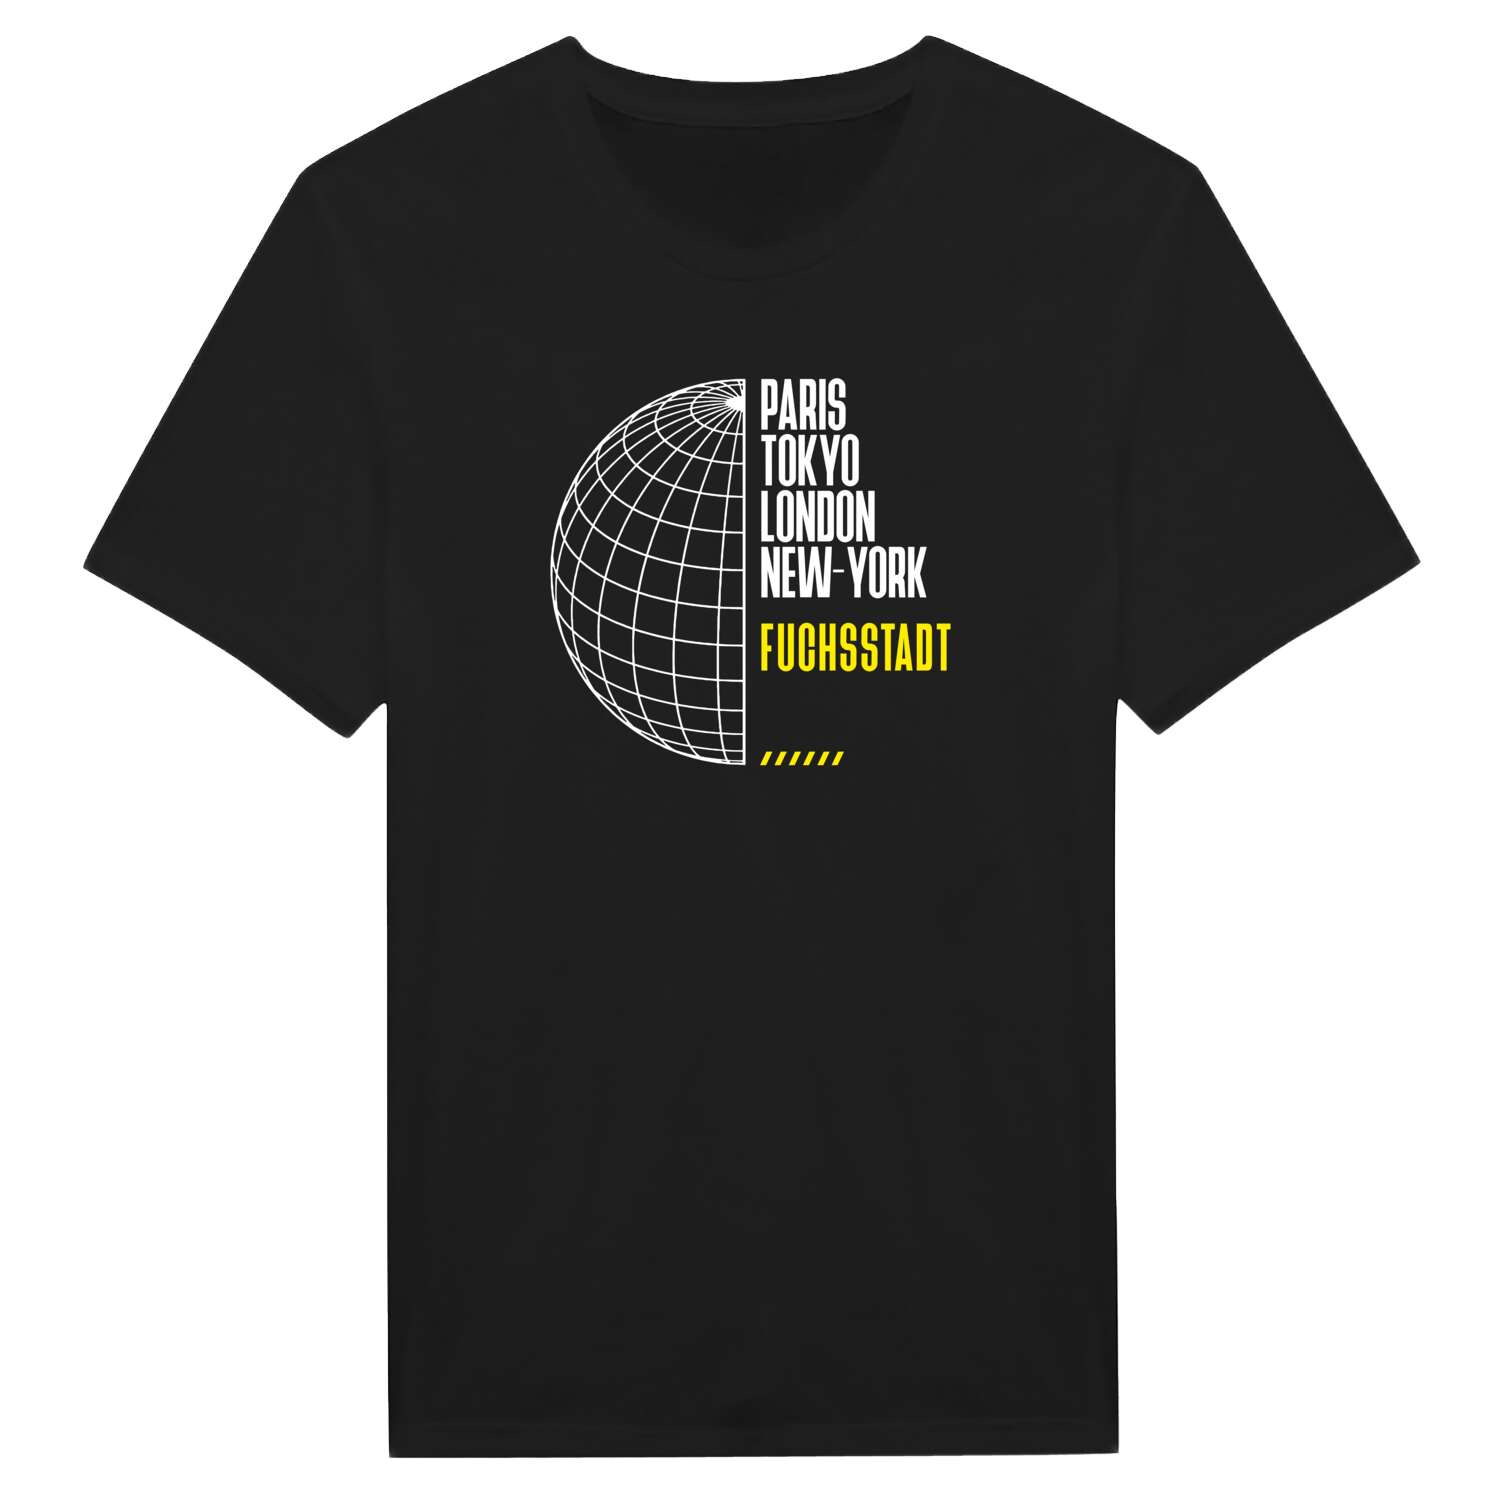 Fuchsstadt T-Shirt »Paris Tokyo London«